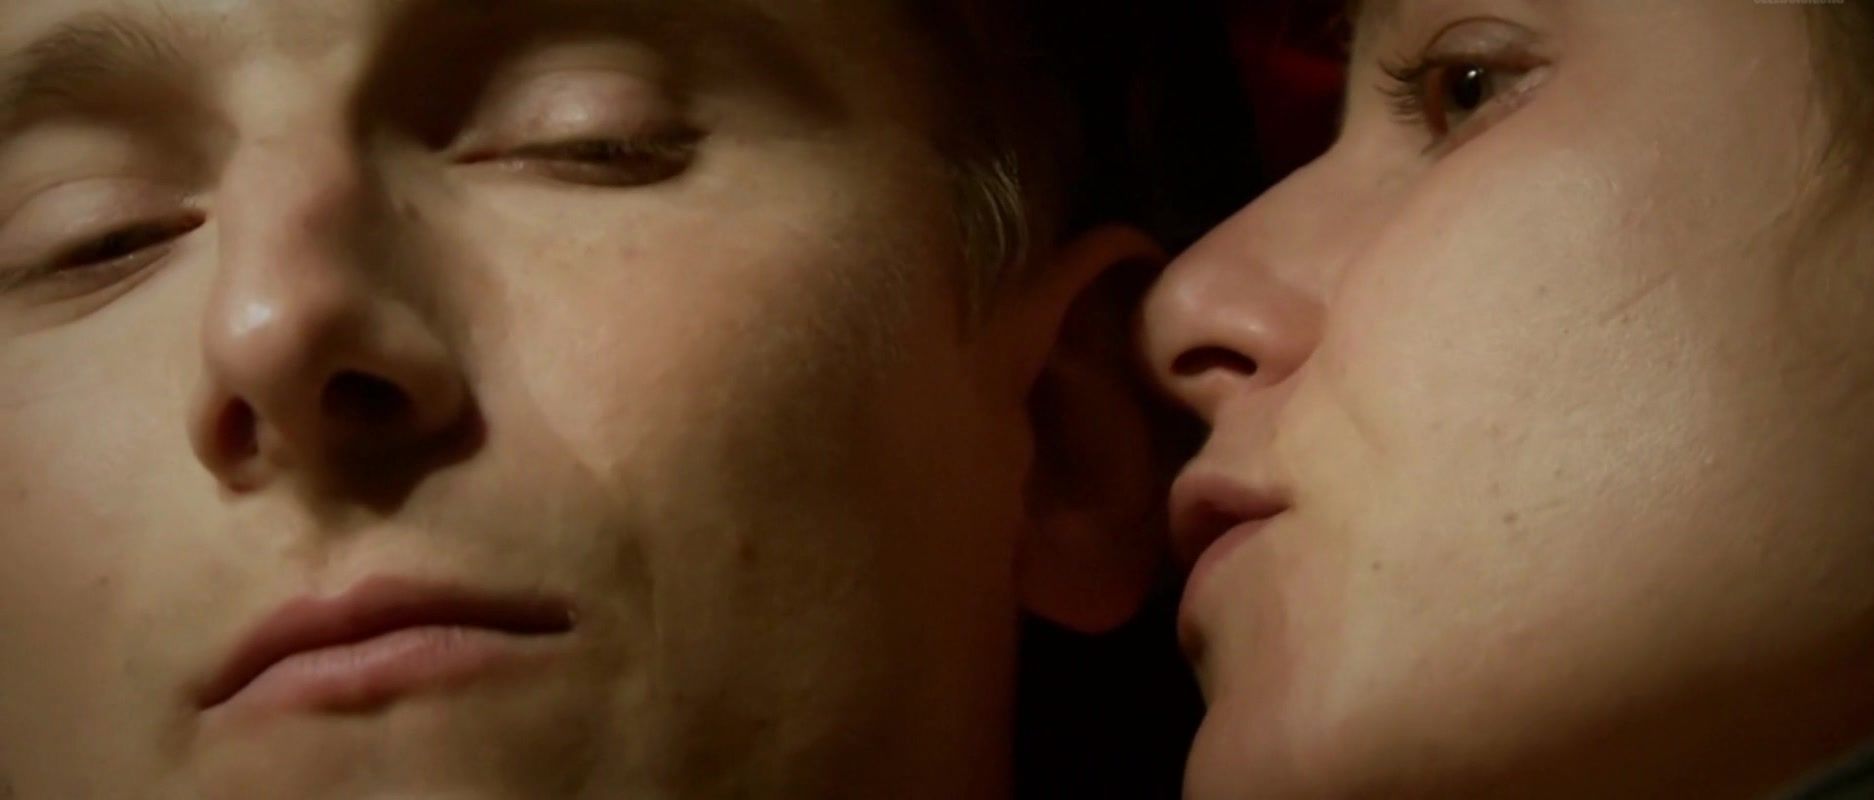 Asstr French Sex Video "Le Plaisir de Chanter" Adult Movie Gay Bondage - 1